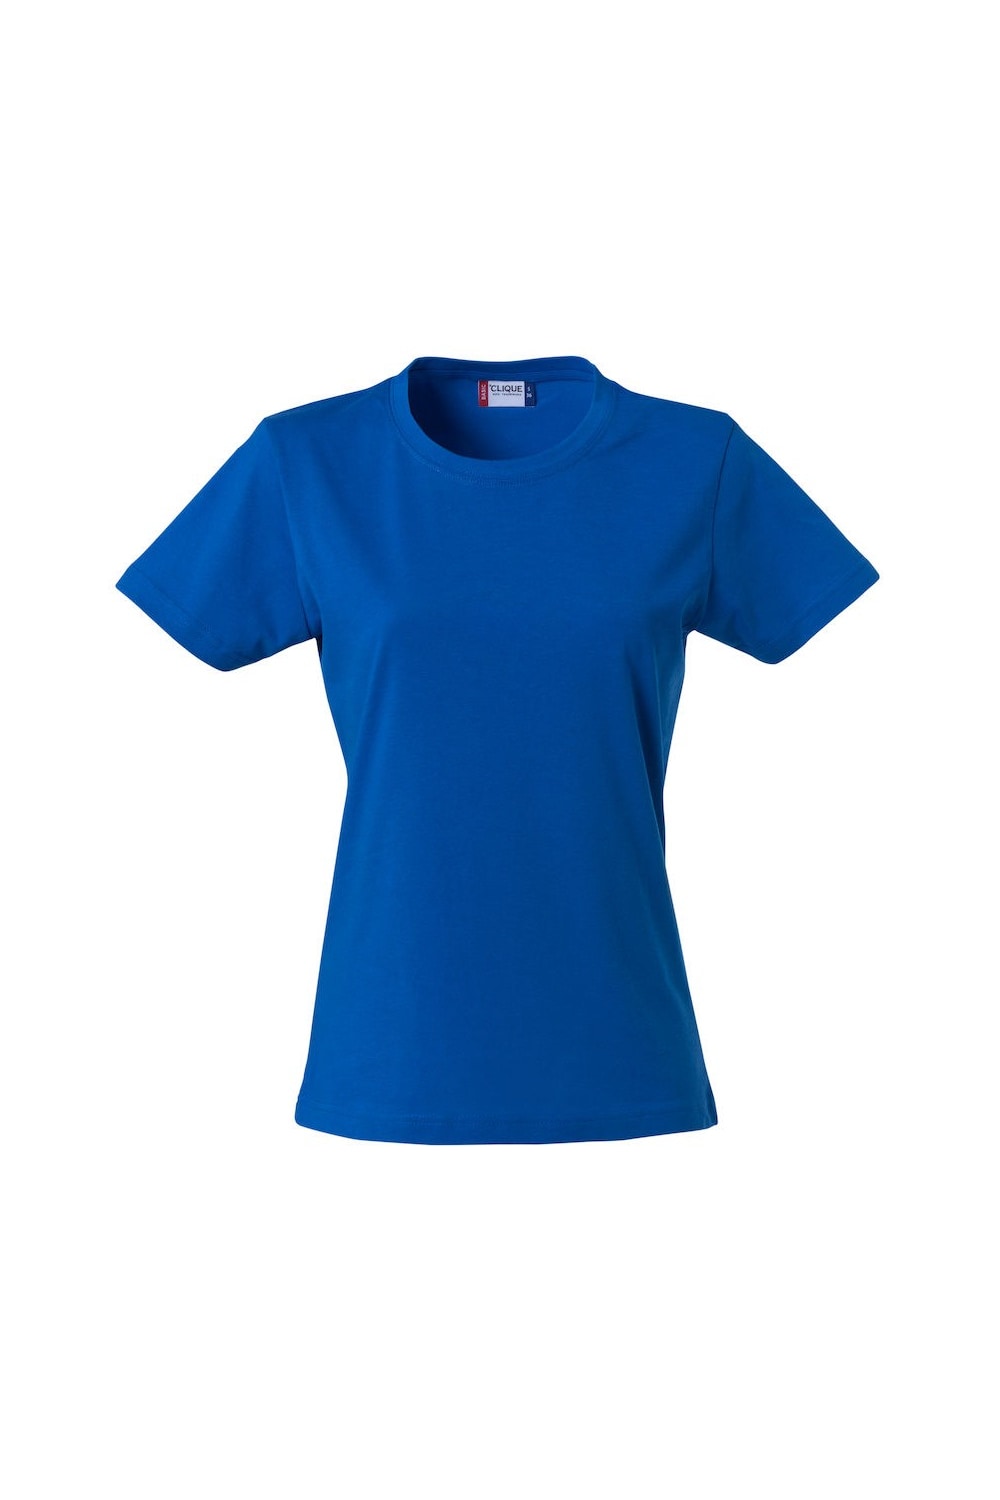 Womens/Ladies Plain T-Shirt - Royal Blue